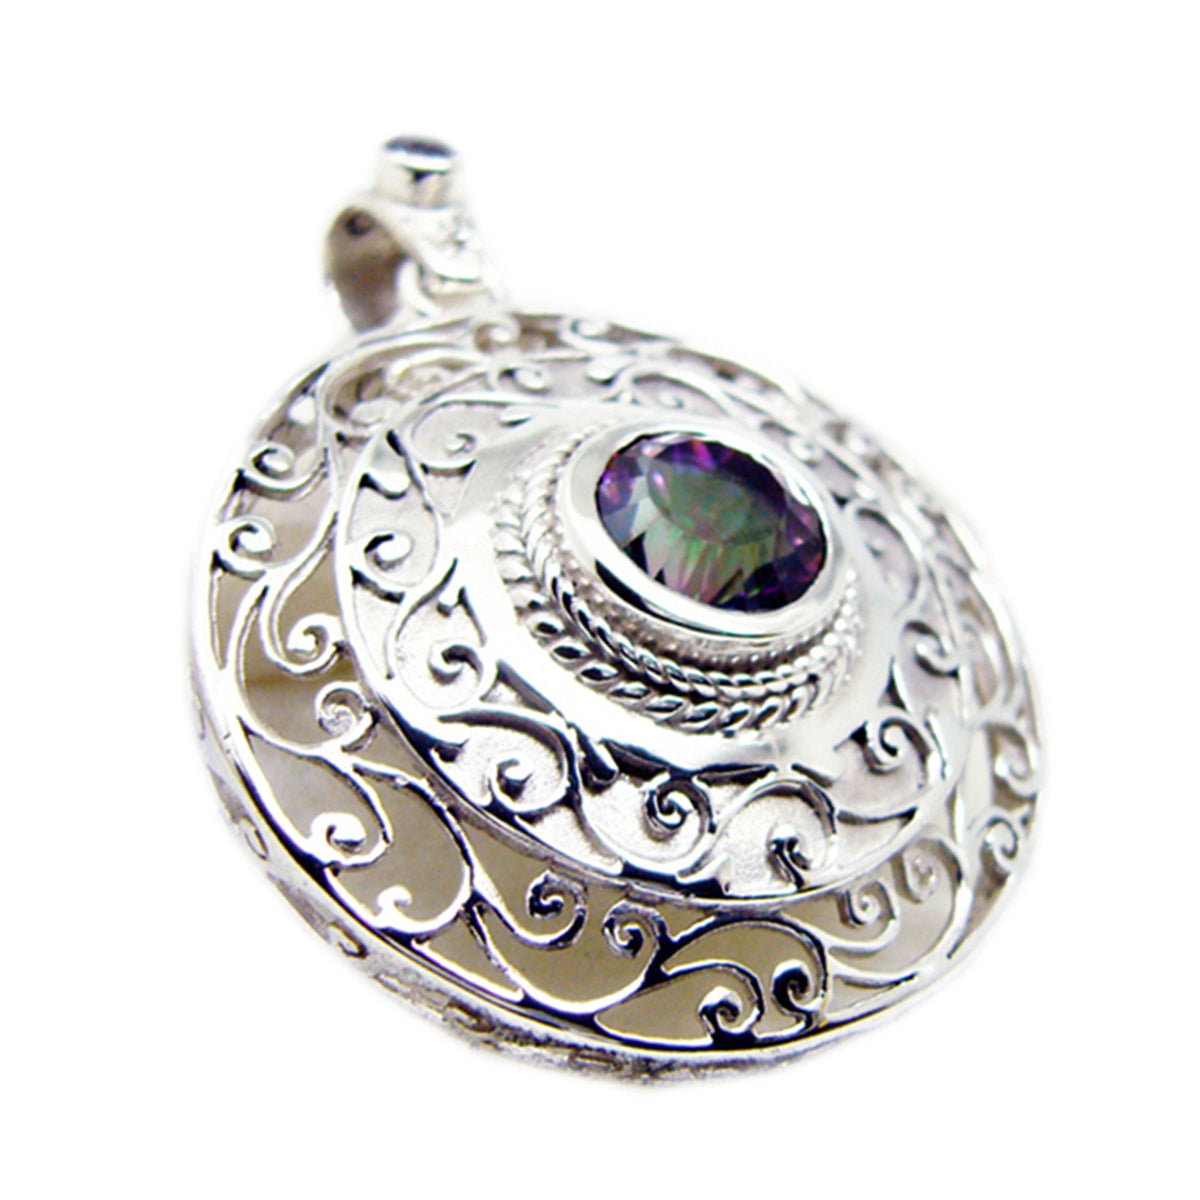 riyo belle gemme rotonde sfaccettate multi colore quarzo mistico ciondolo in argento massiccio regalo per il matrimonio